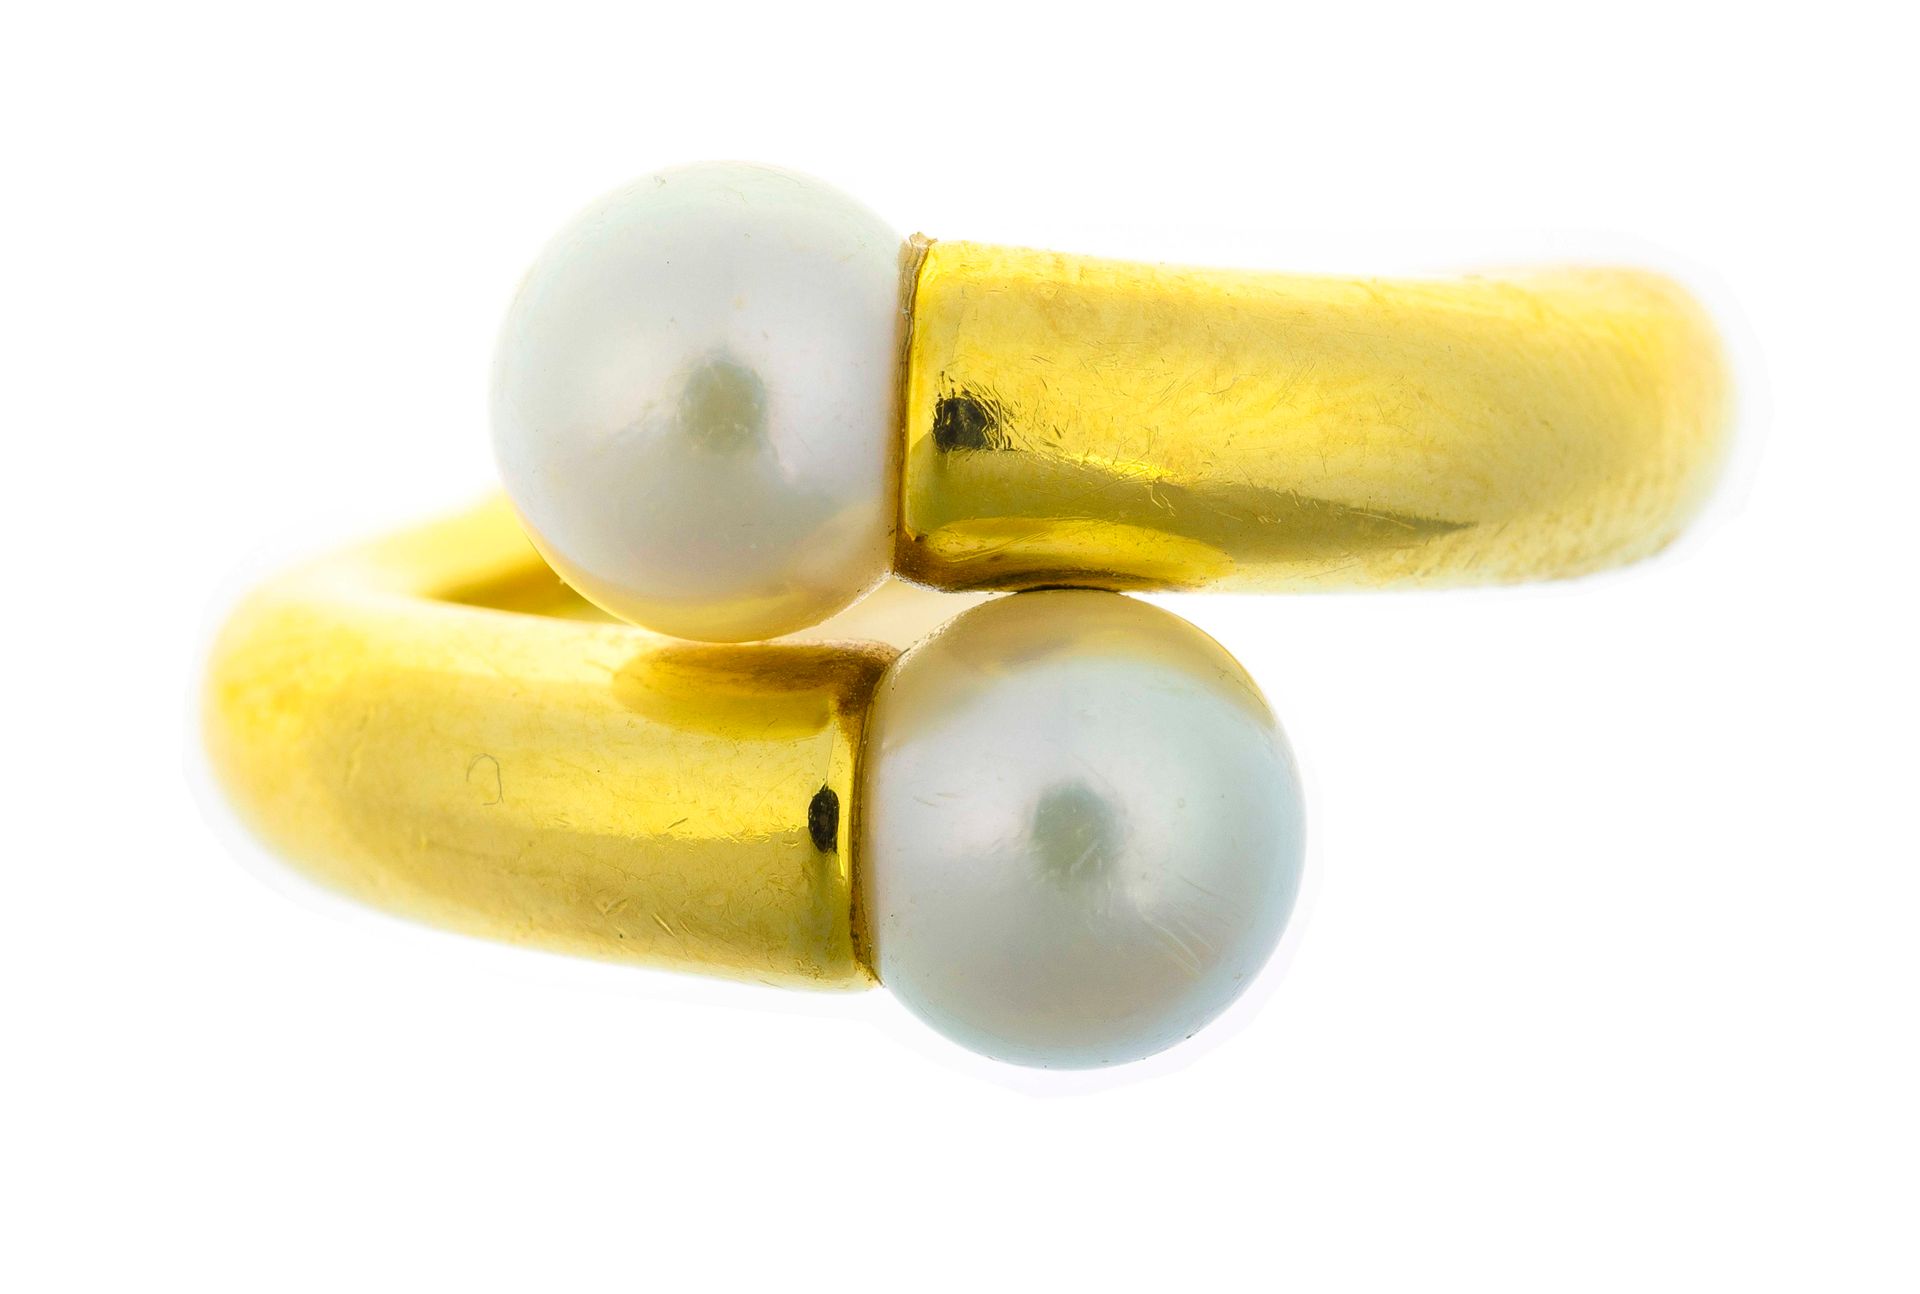 Null 卡地亚 - 1996年 - 十字戒指，镶嵌两颗白色养殖珍珠（约7.1毫米） - 签名和编号 - TDD: 58 - 毛重: 15.5 g